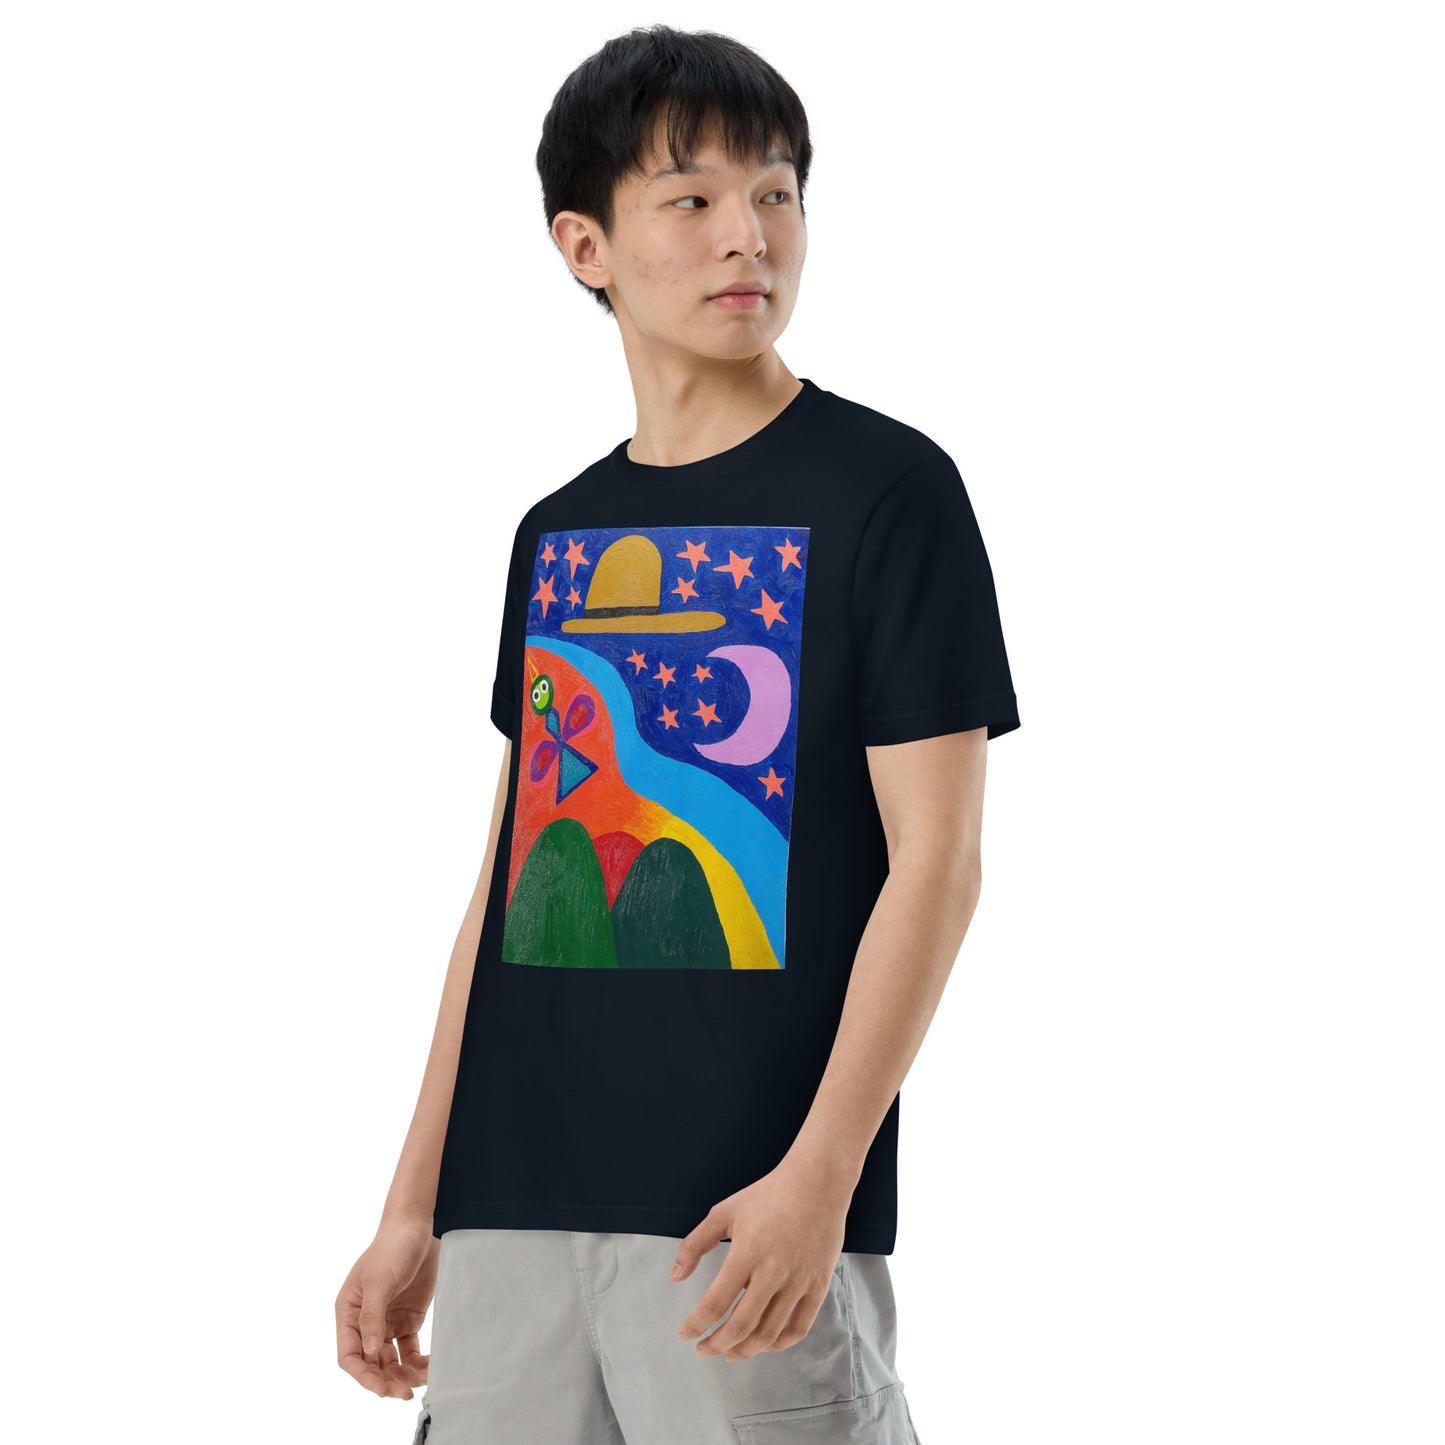 045-清水誠治-3-前面プリントTシャツ-アートをデザイン